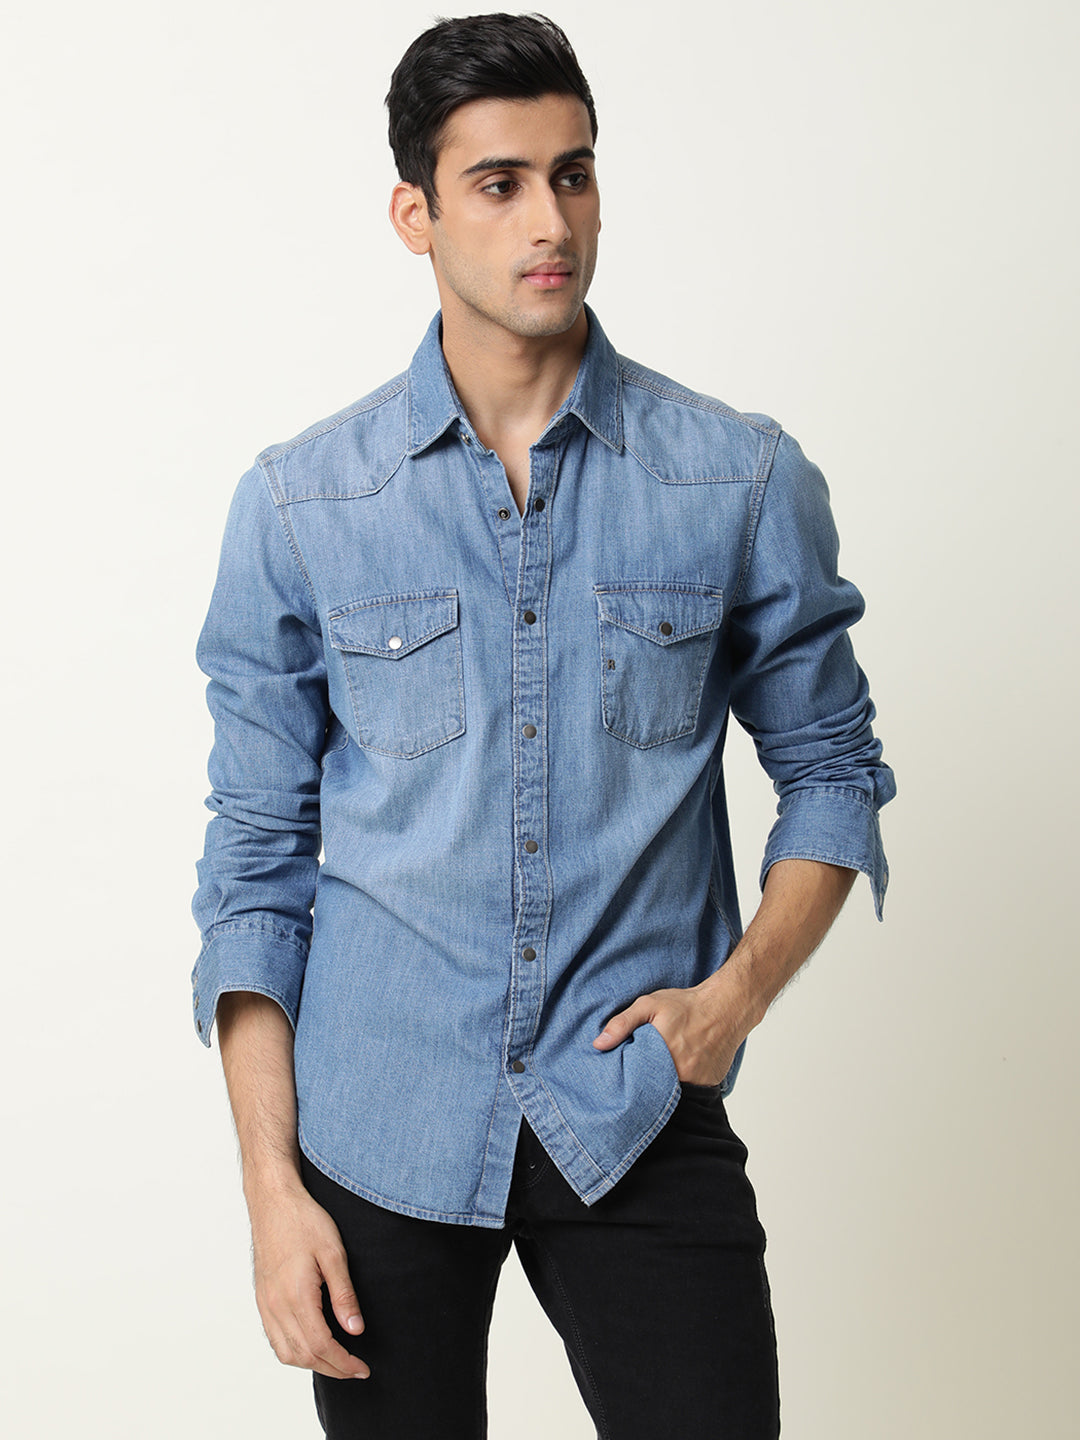 Buy Light Blue Denim Full Sleeves Shirt Shirt Online | Tistabene - Tistabene